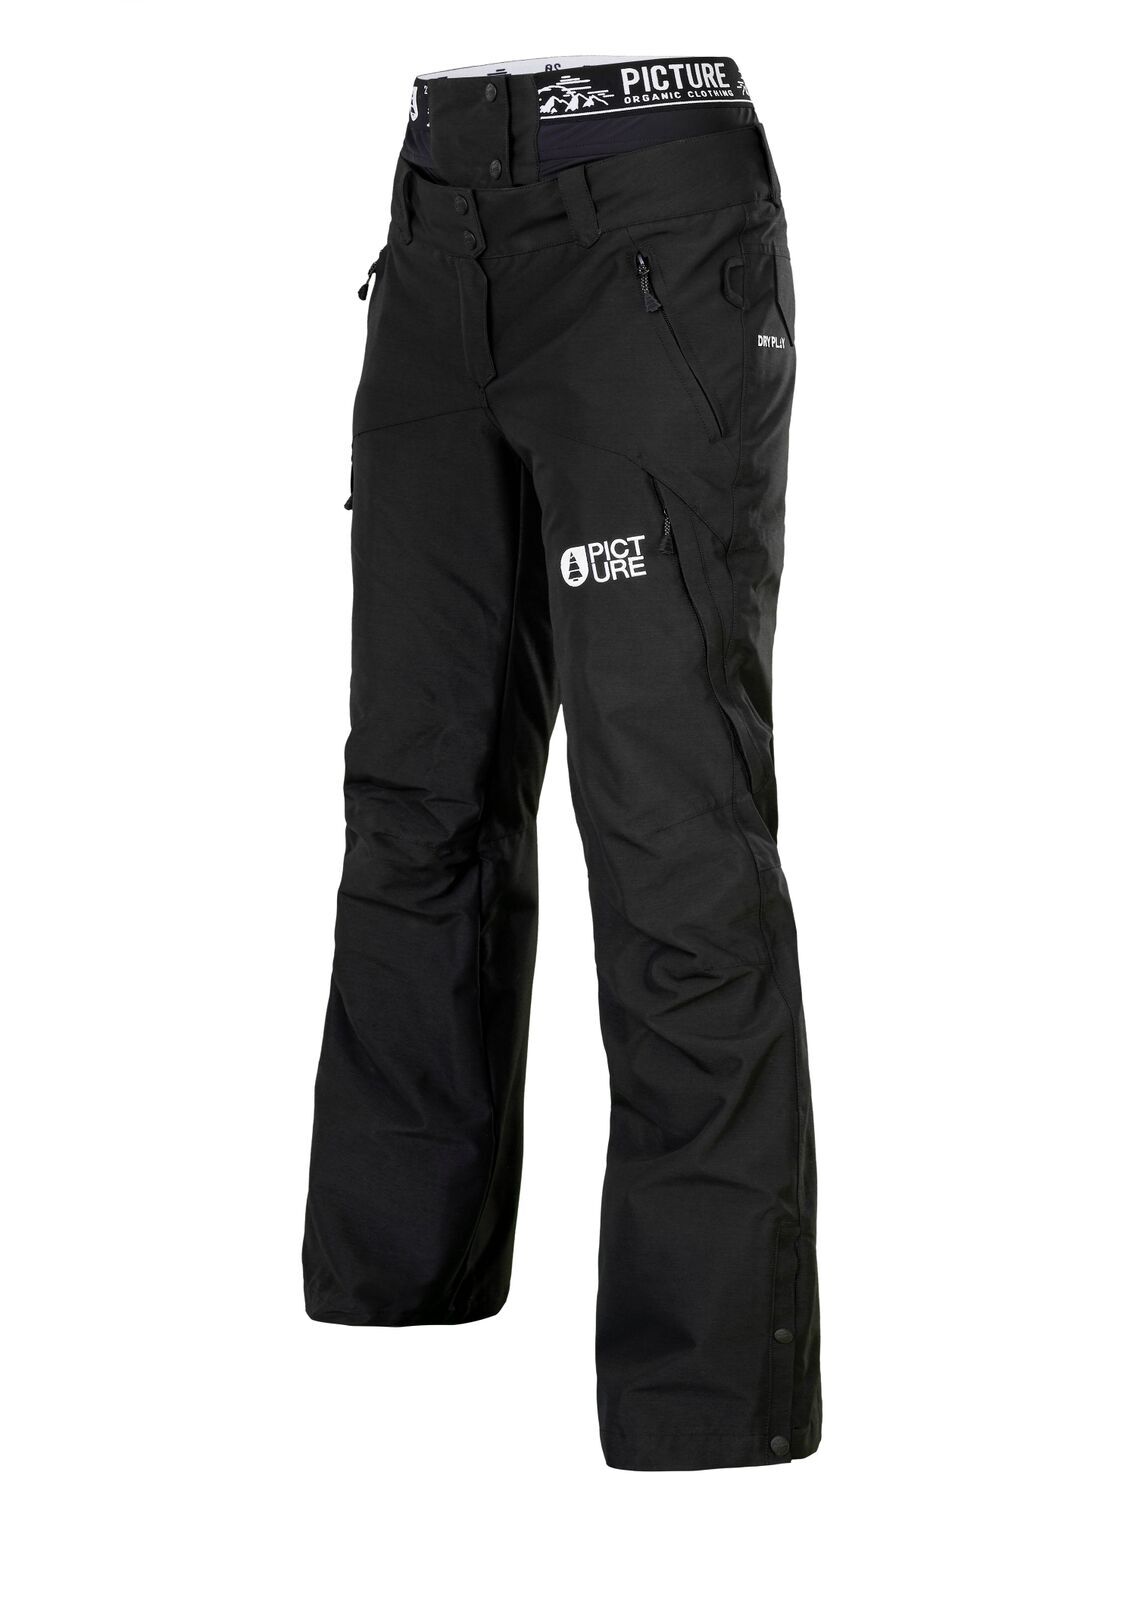 Picture Organic Clothing - Treva - Ski pants - Women's